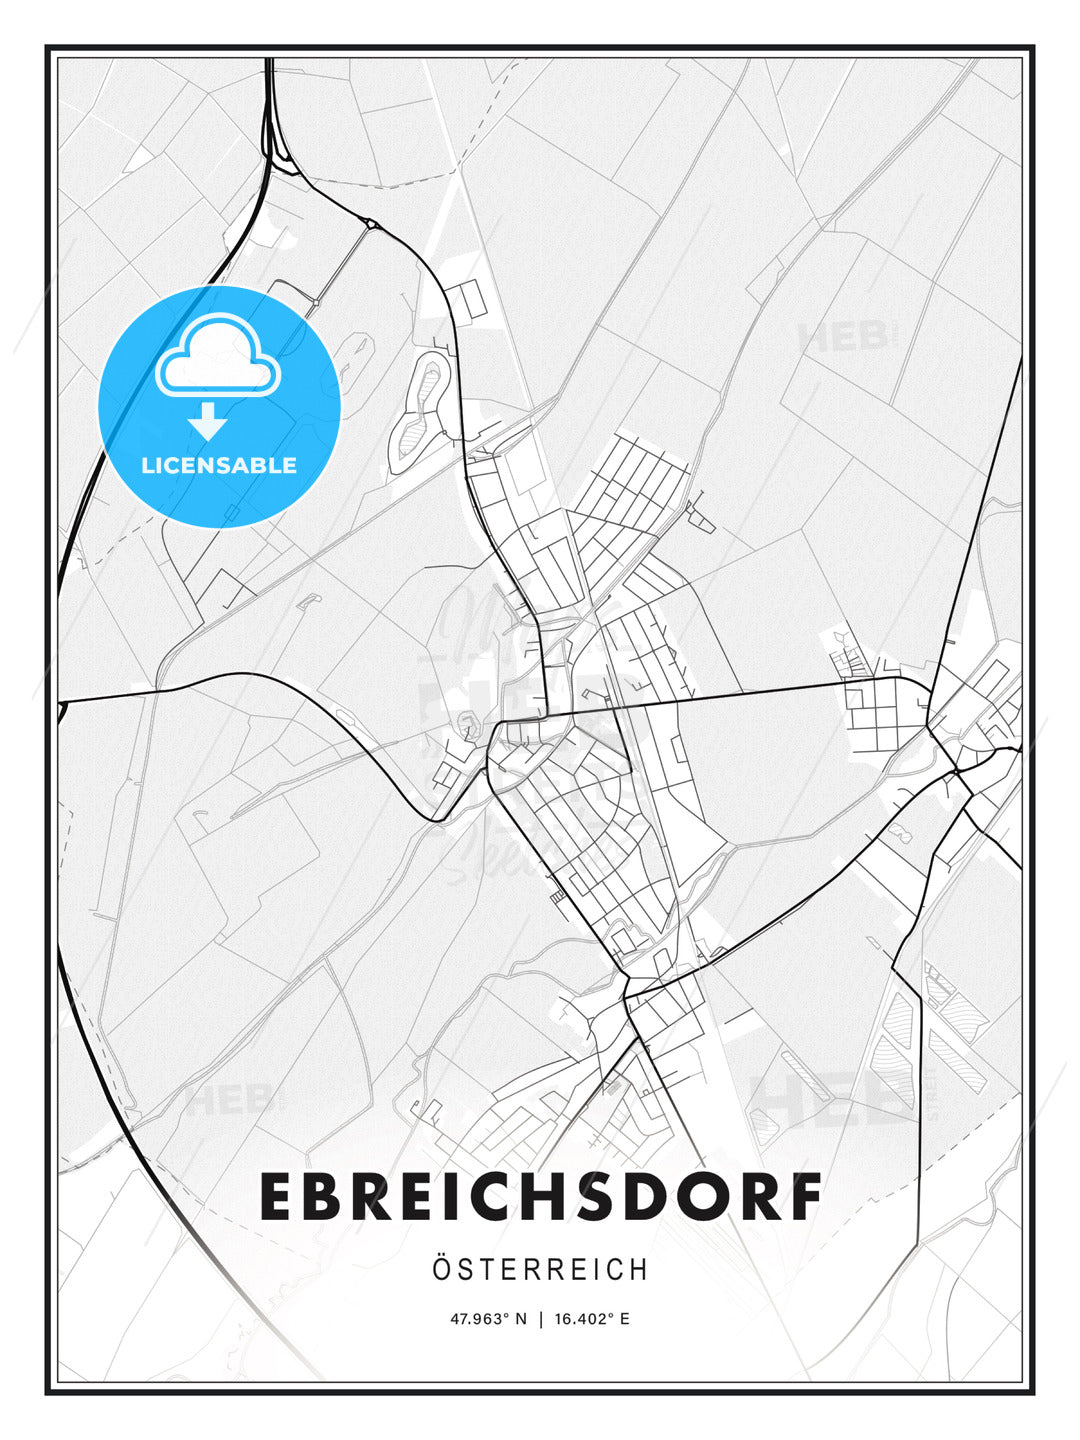 Ebreichsdorf, Austria, Modern Print Template in Various Formats - HEBSTREITS Sketches